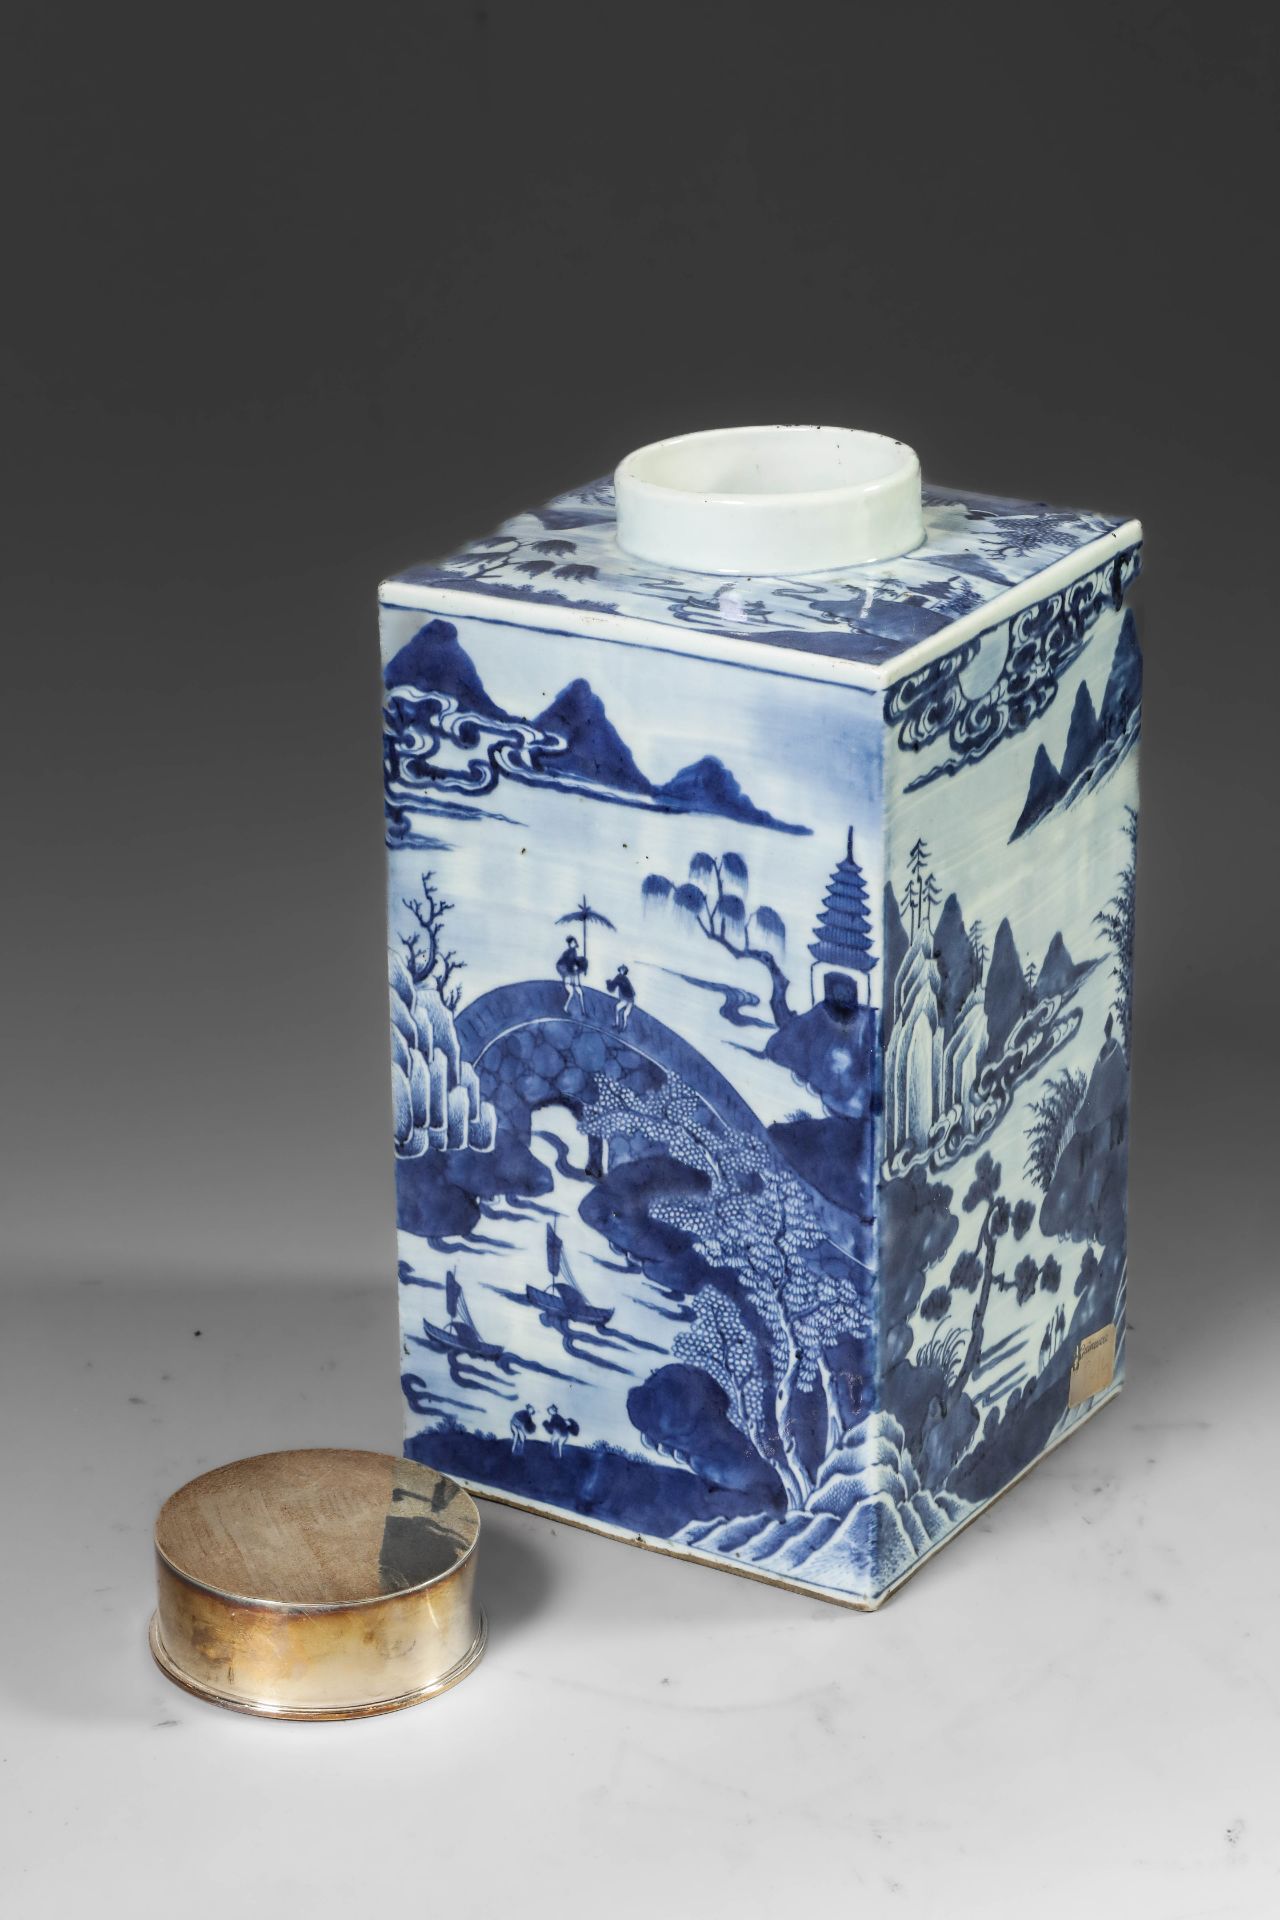 Suite de neuf pots à thé quadrangulaire en porcelaine blanche décoré en bleu sous couverte de - Image 12 of 47